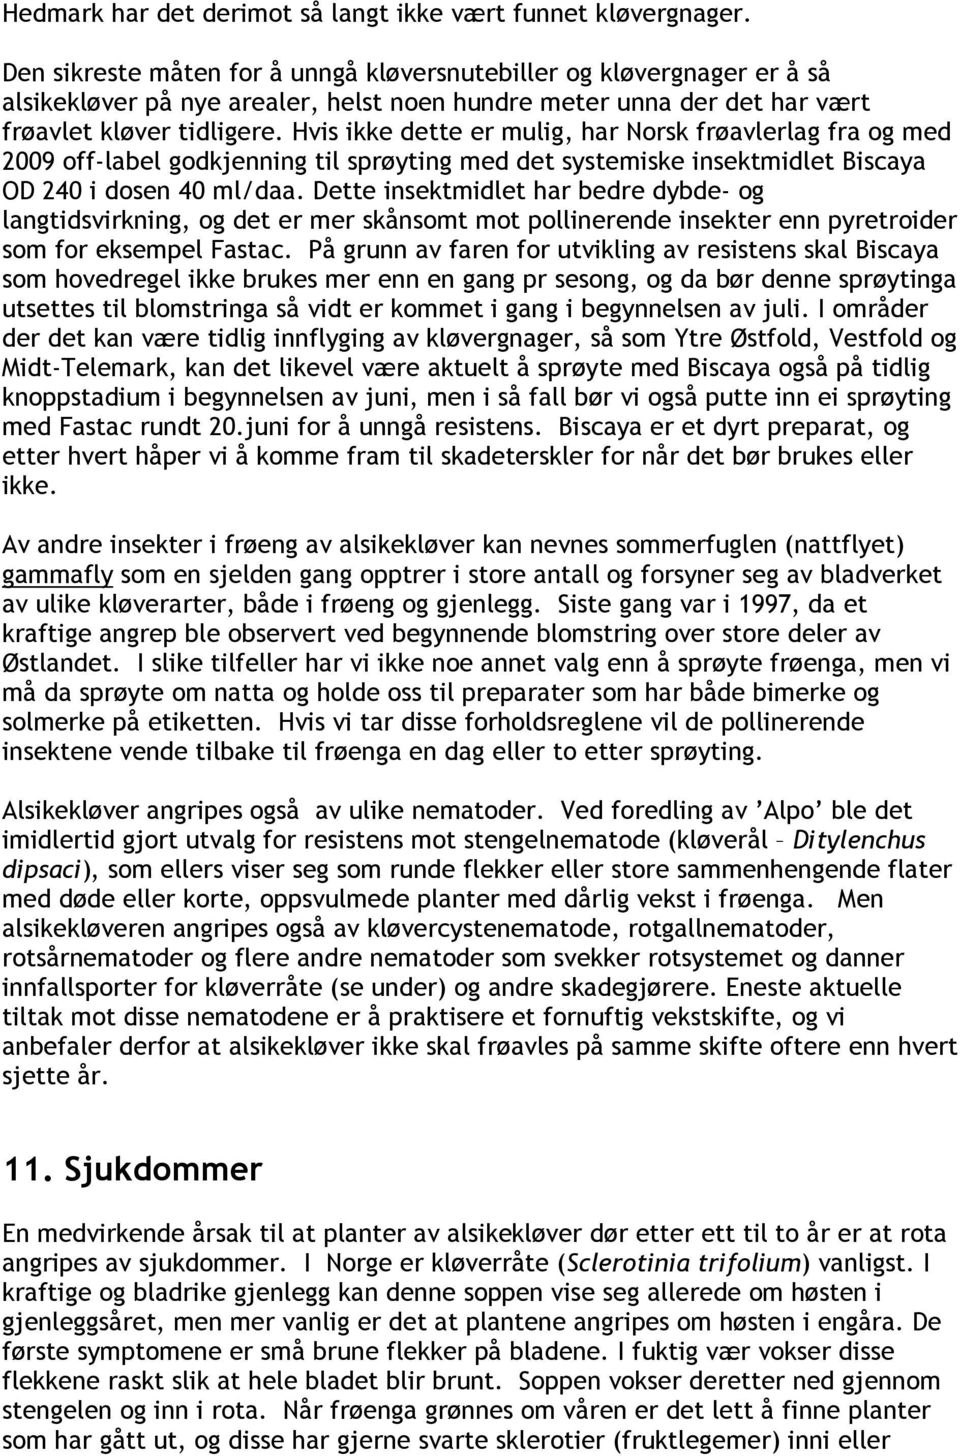 Hvis ikke dette er mulig, har Norsk frøavlerlag fra og med 2009 off-label godkjenning til sprøyting med det systemiske insektmidlet Biscaya OD 240 i dosen 40 ml/daa.